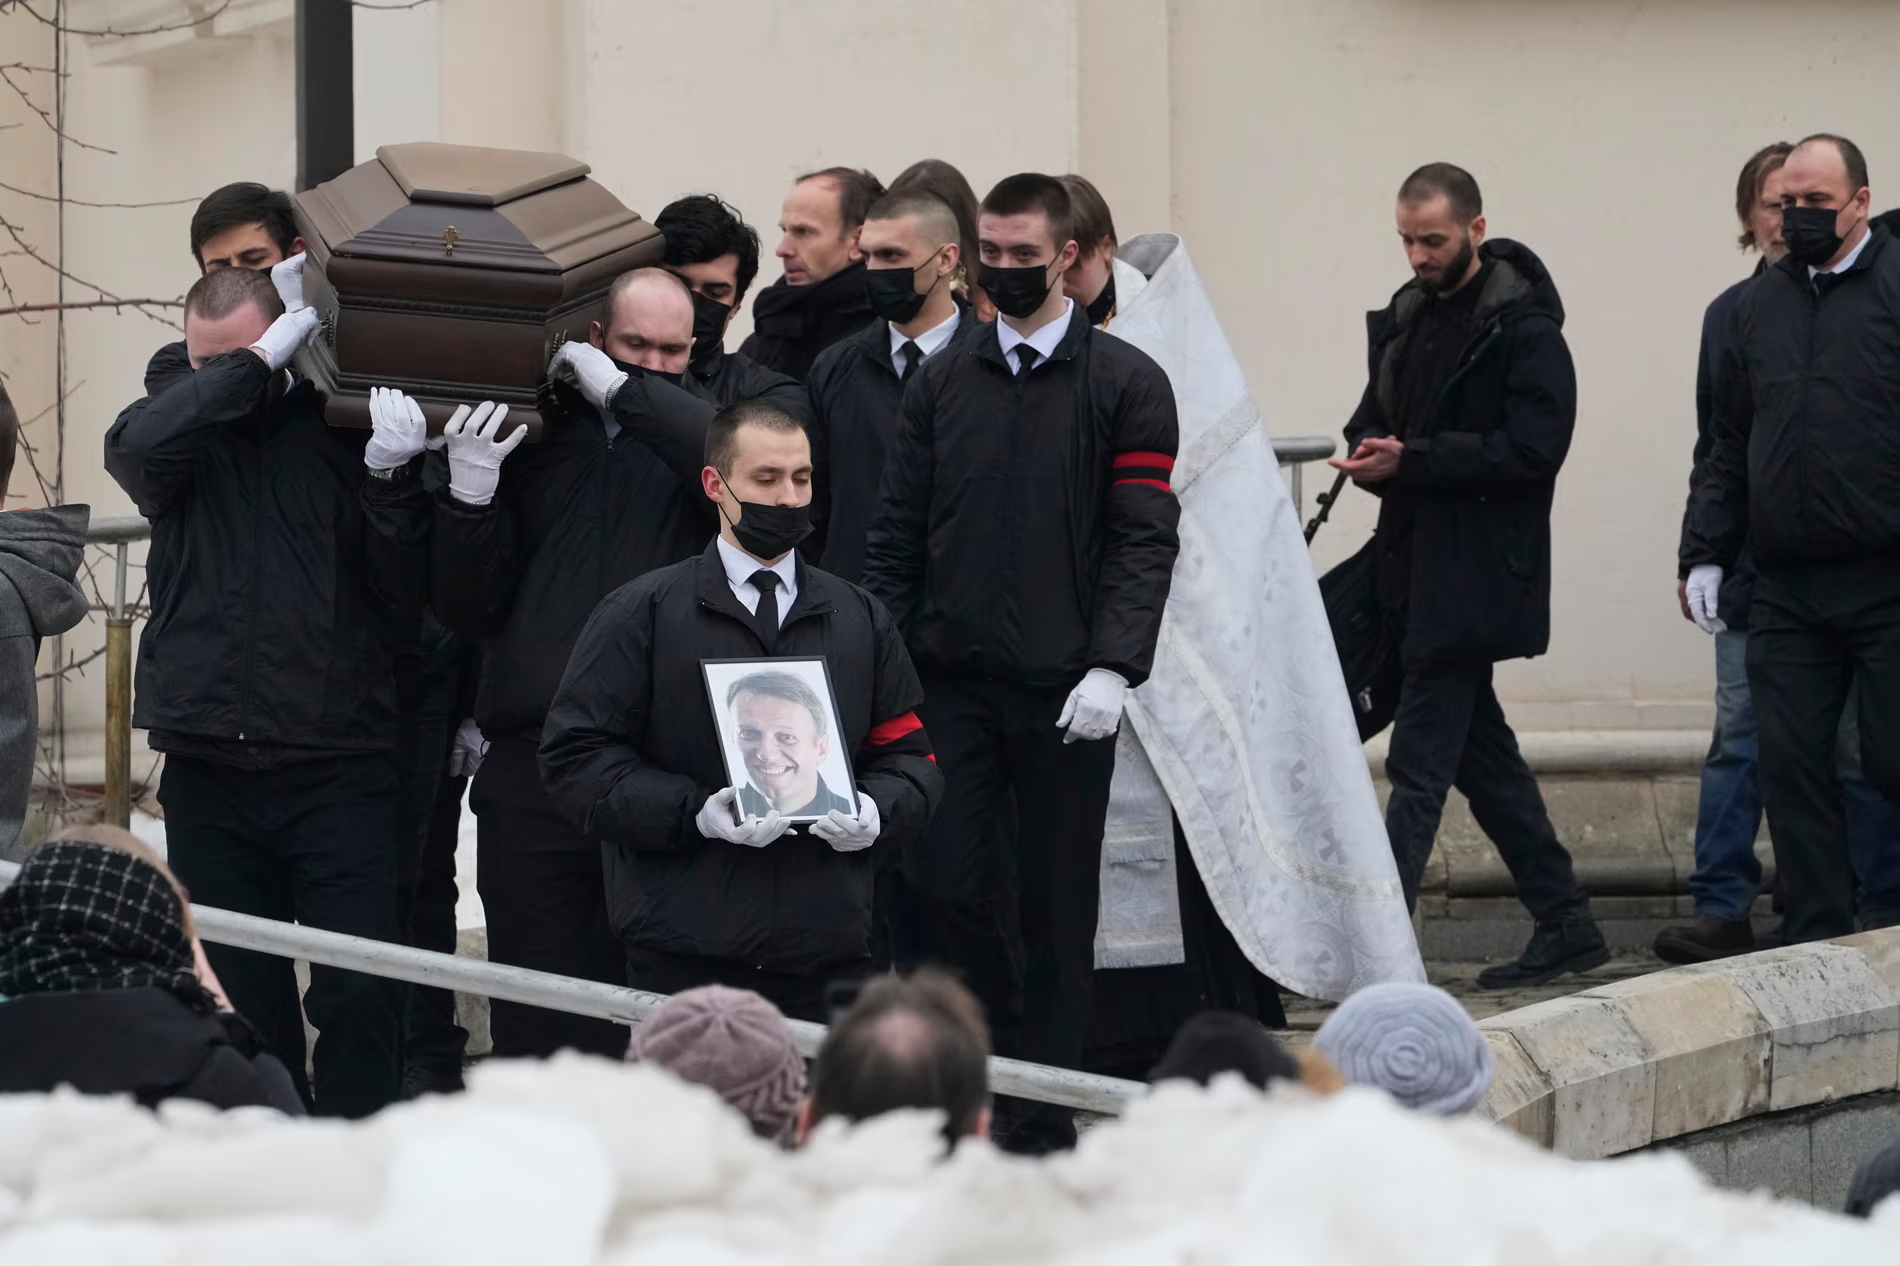 俄反对派领袖纳瓦利内葬礼在俄举行 上千人聚集哀悼